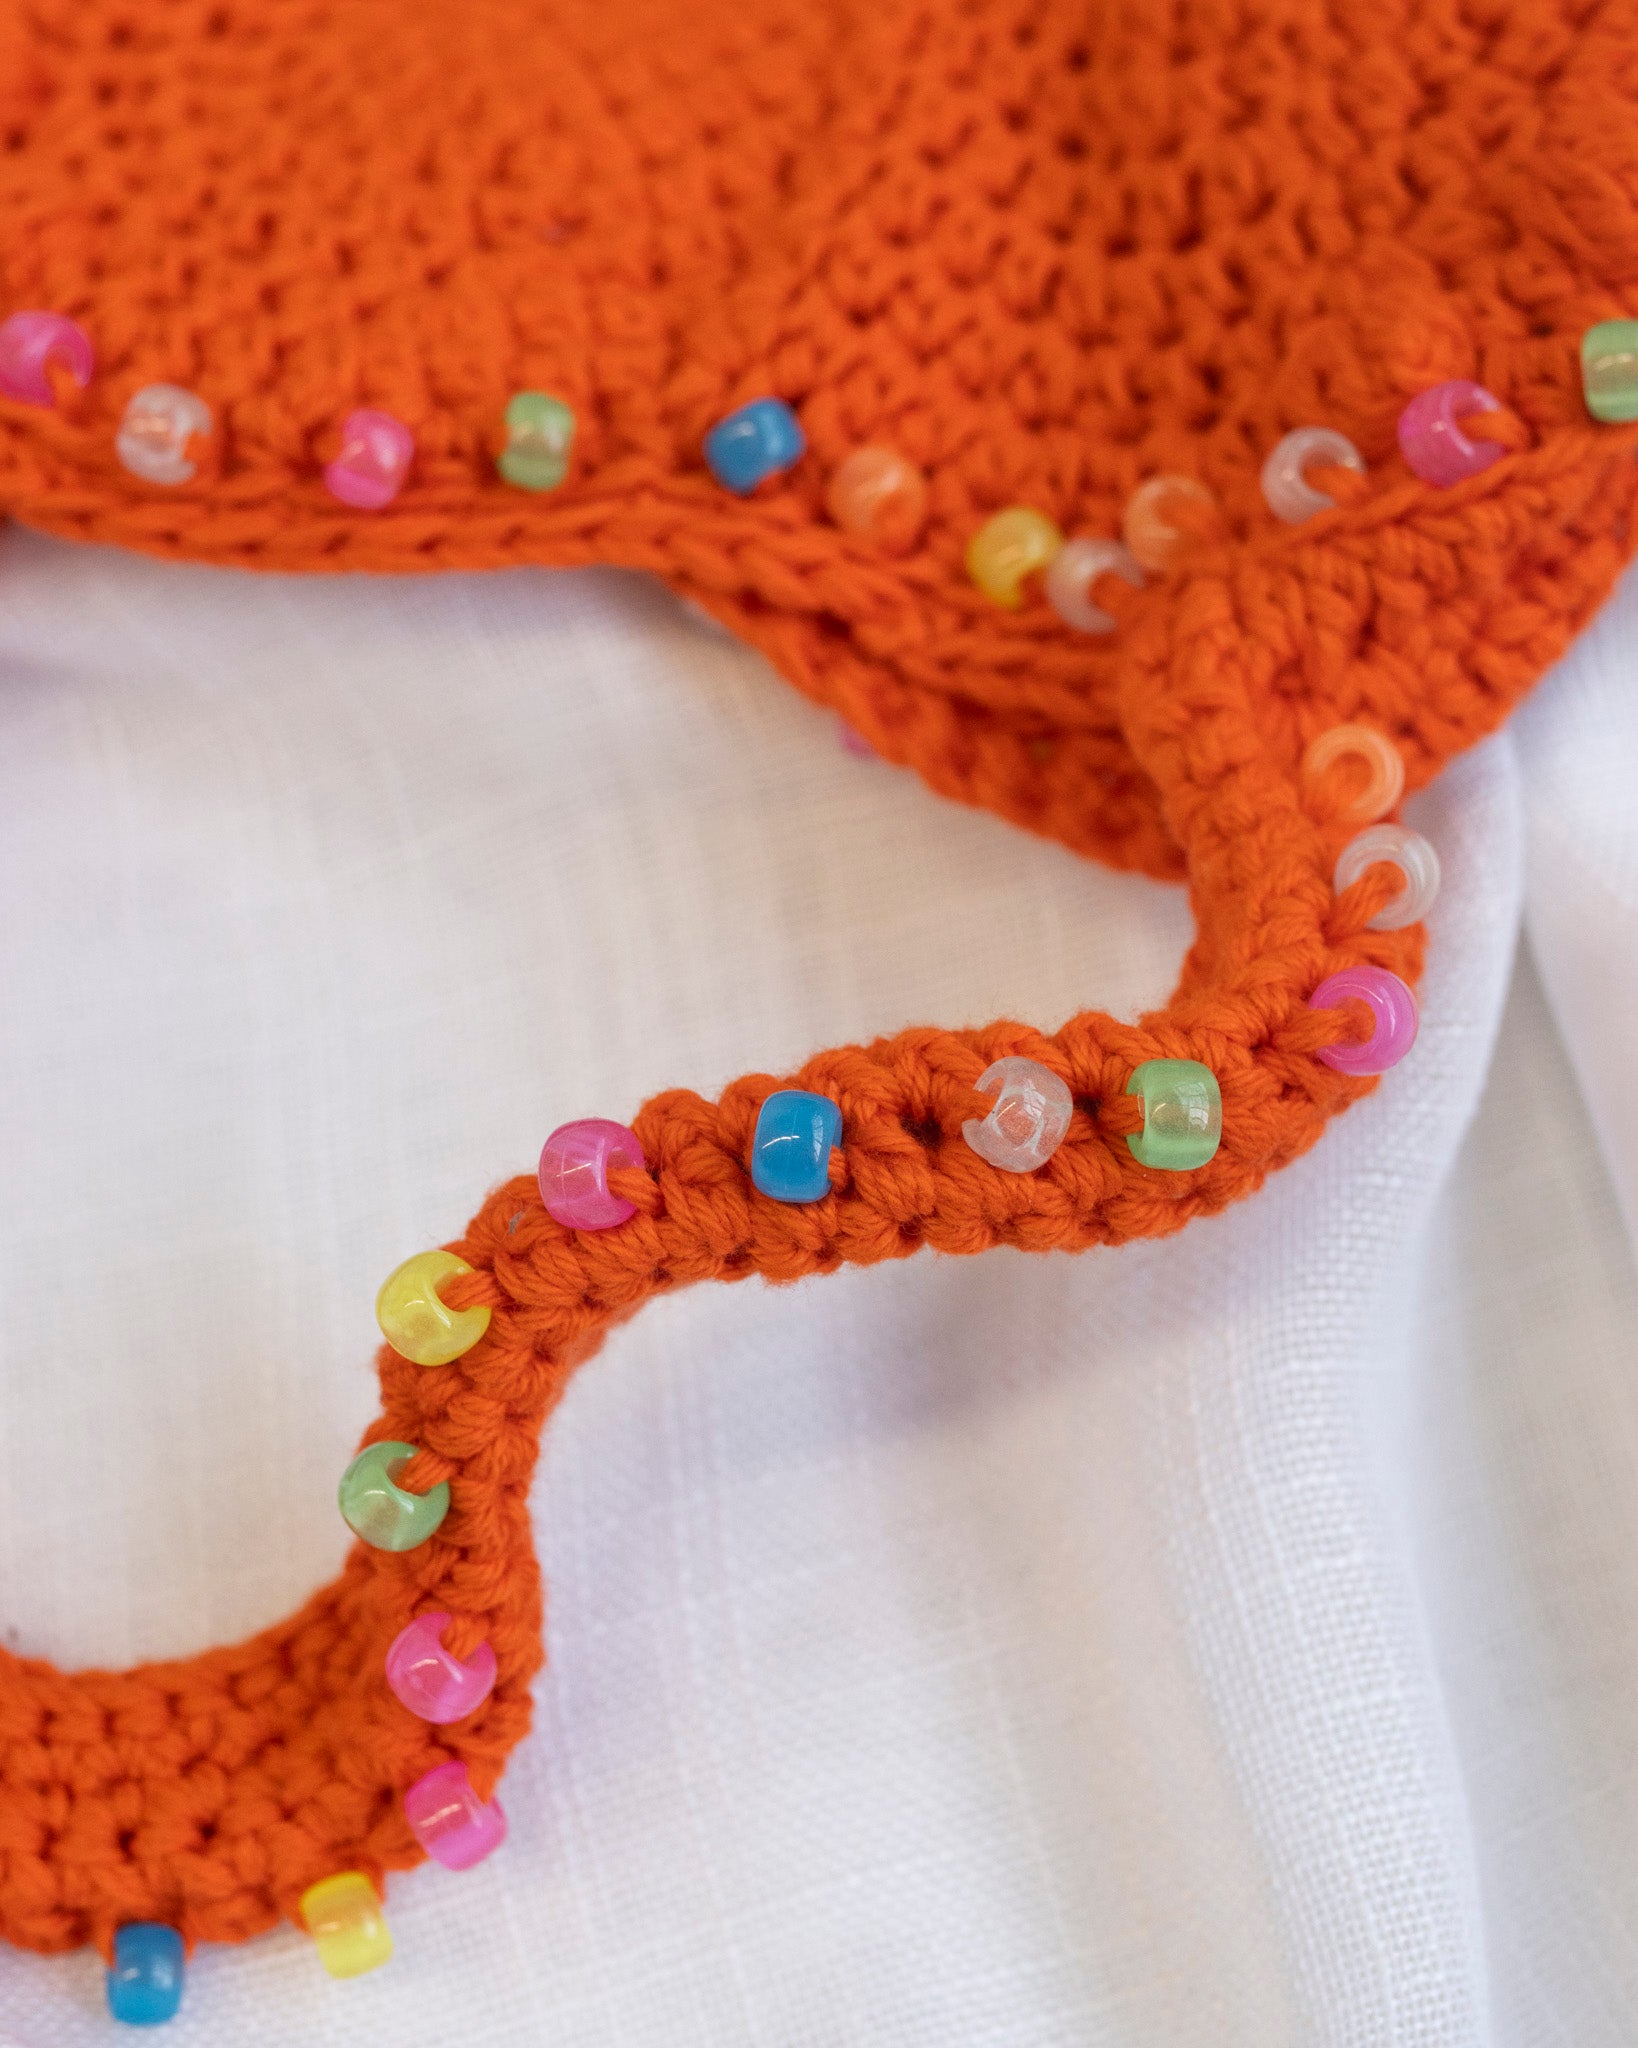 Flower Boy Ted - Orange Crochet Heart Purse